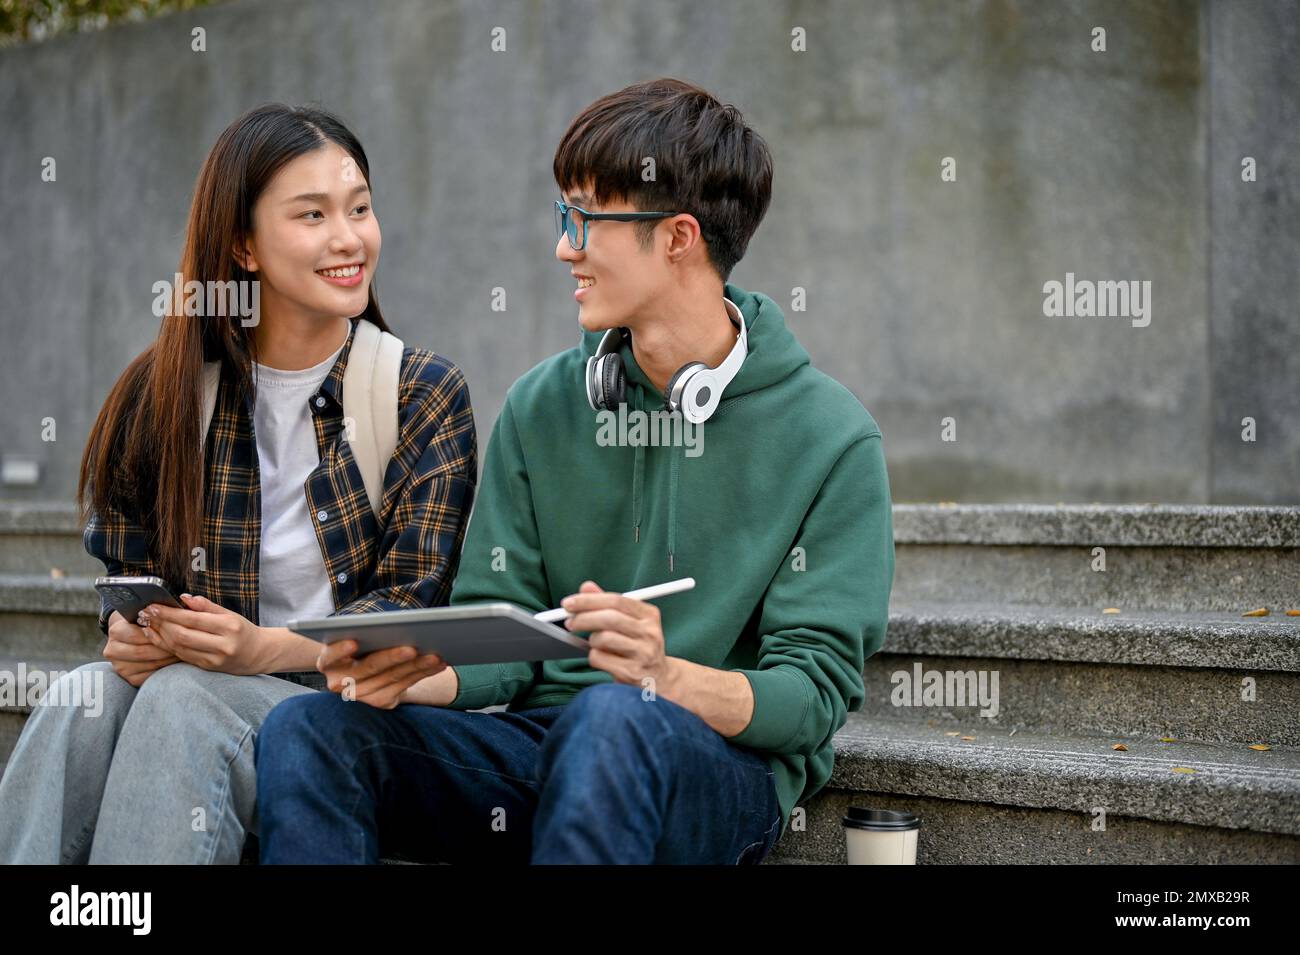 Zwei glückliche junge asiatische College-Freunde, die auf der Treppe sitzen und ein Tablet benutzen, unterhalten sich gern und diskutieren über ihre Schulprojekte. Stockfoto